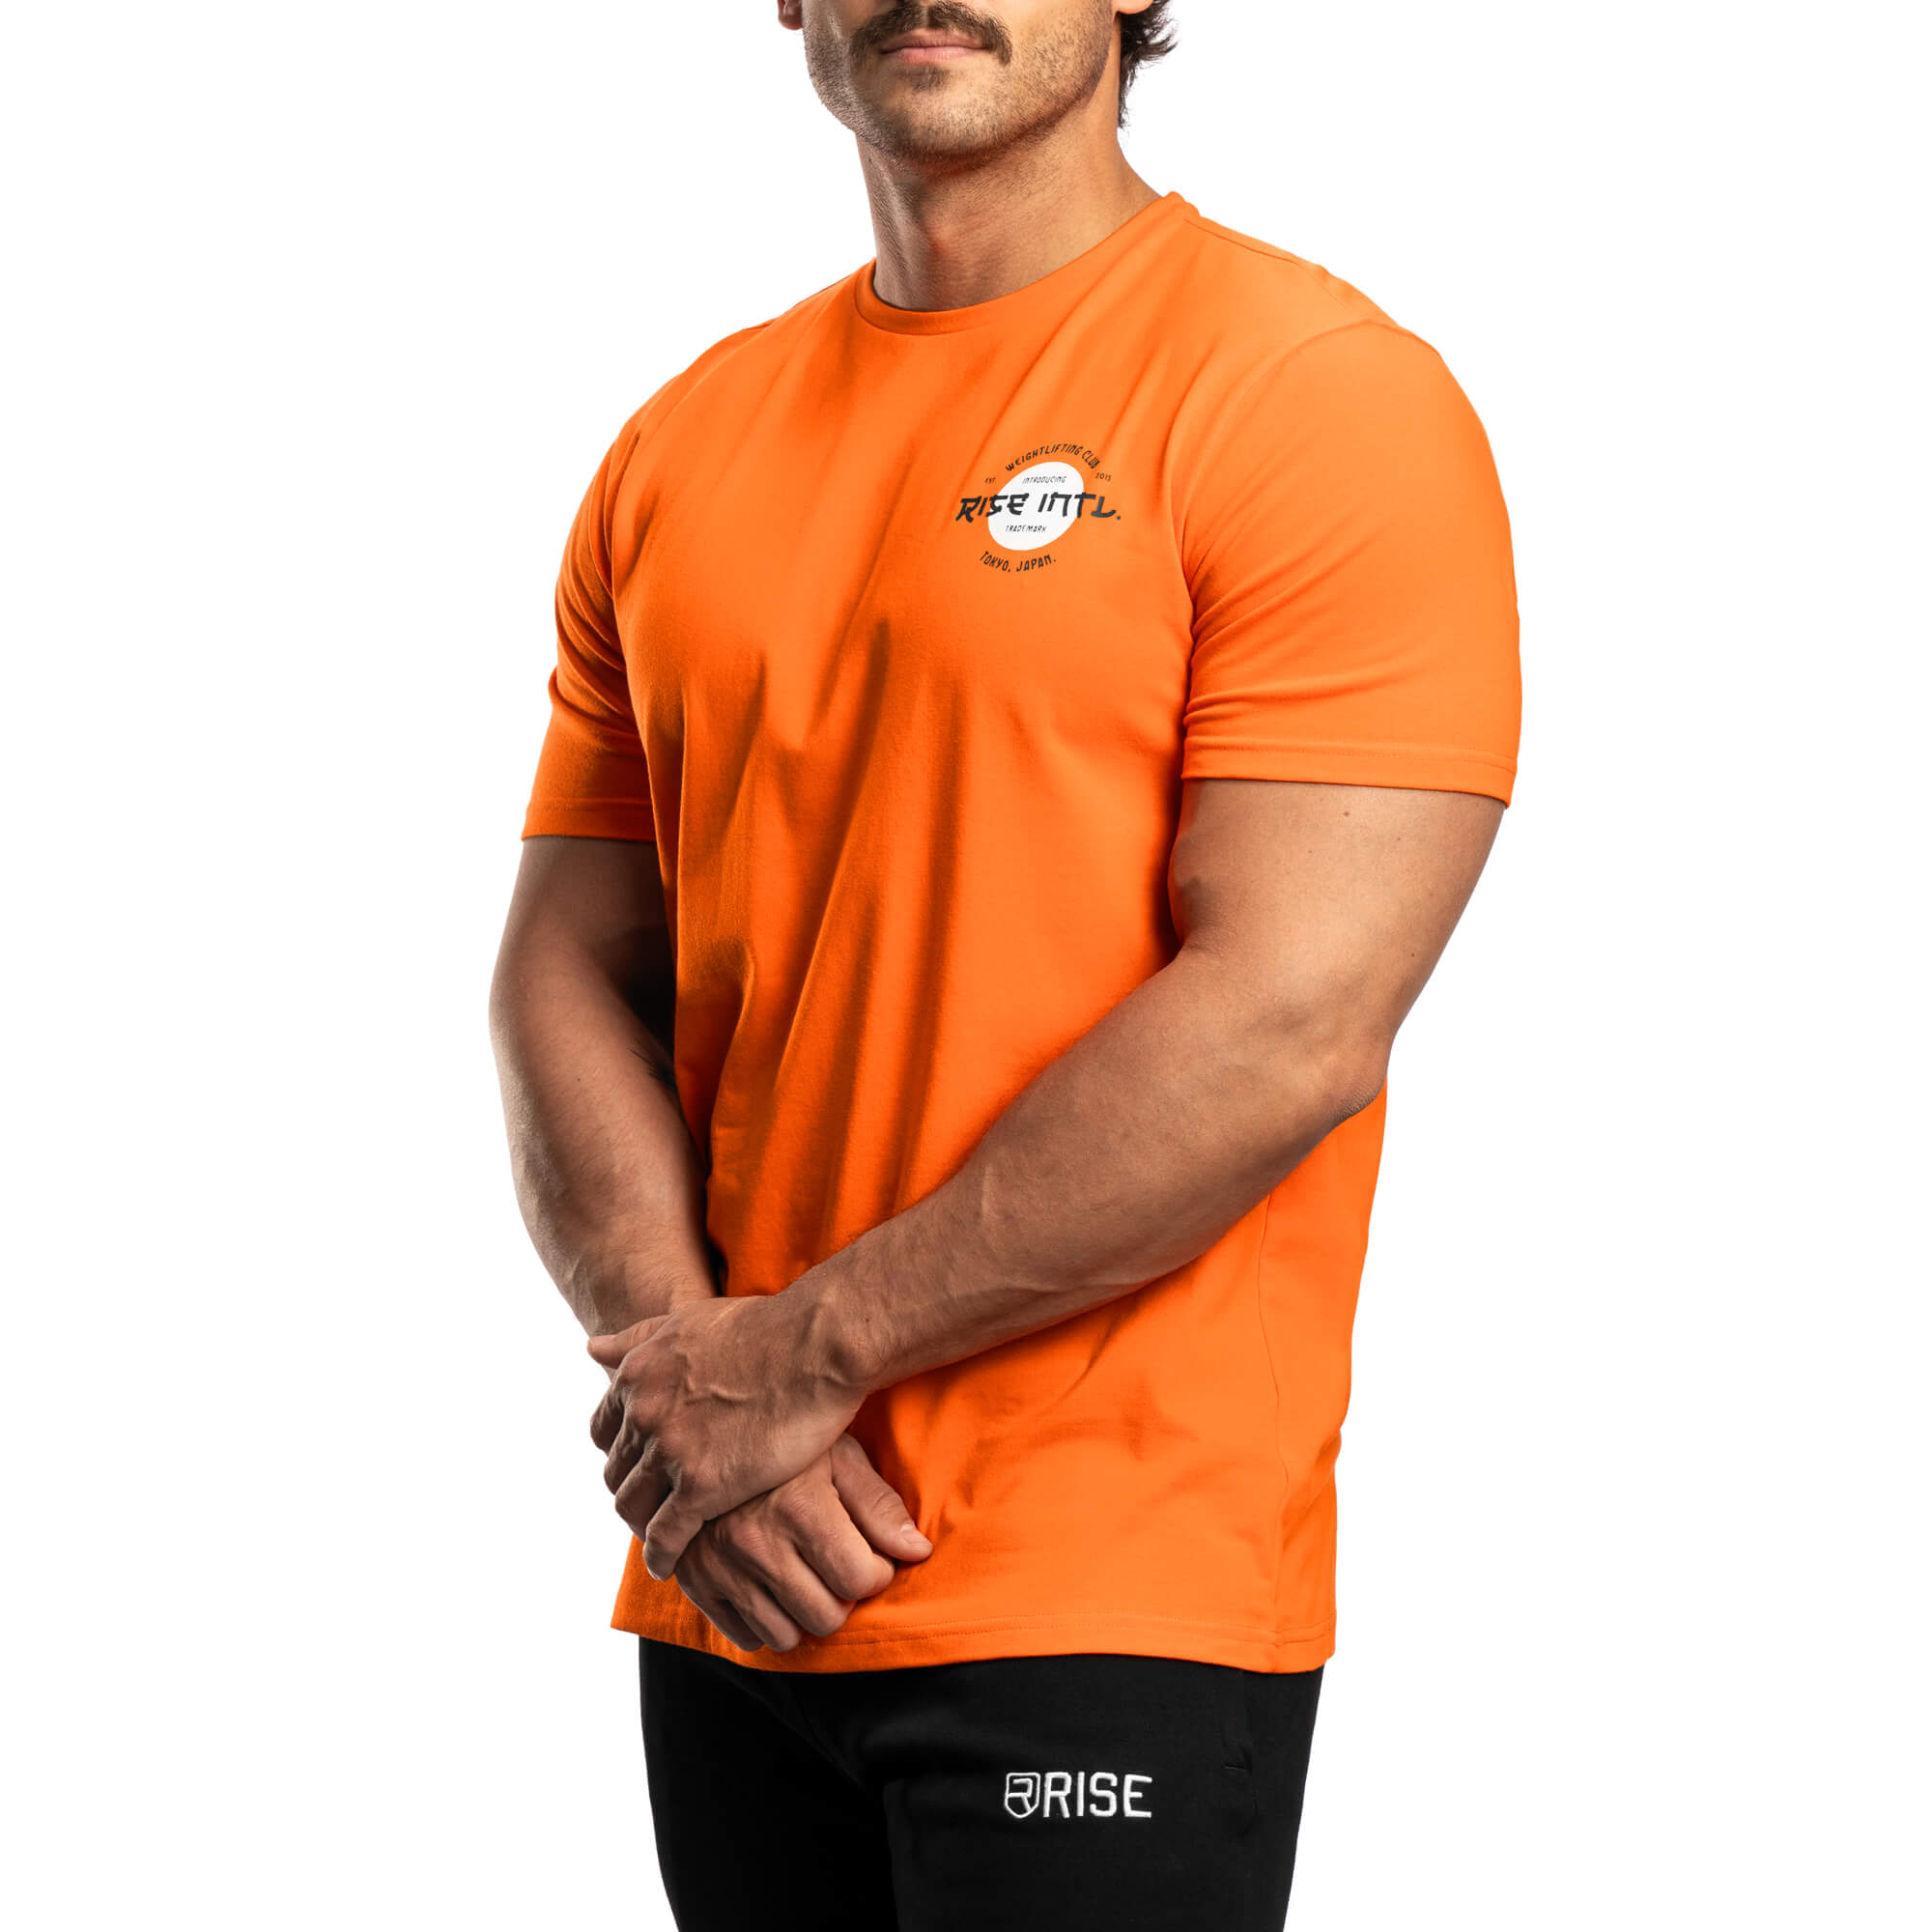 Japan Weightlifting Club Shirt - Orange